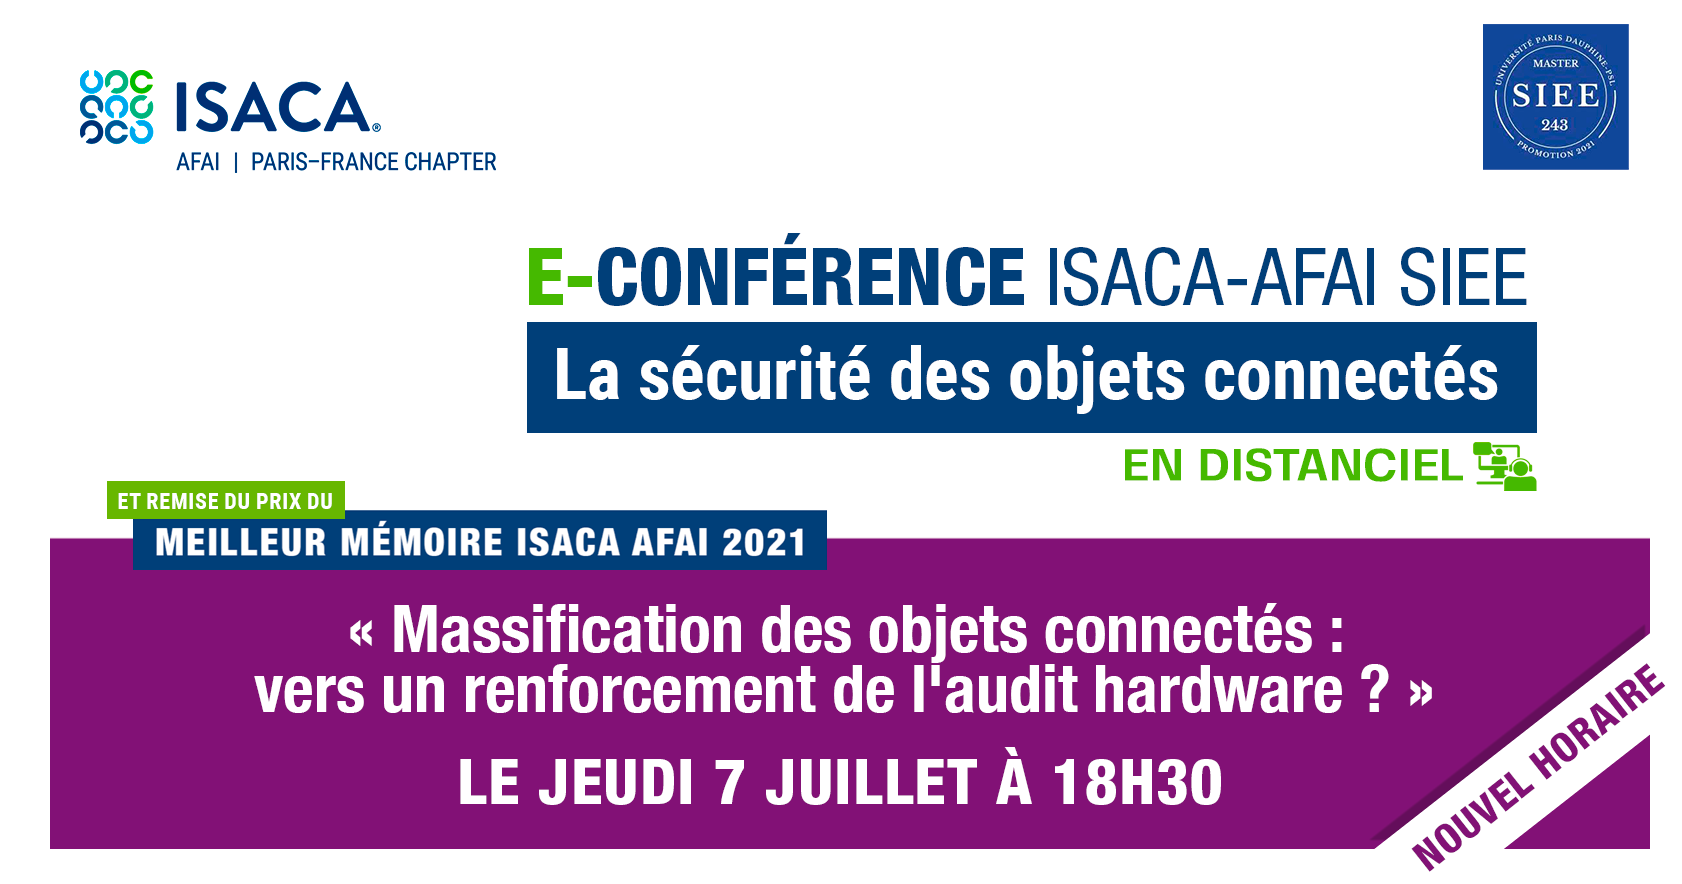 E-Conférence : "La sécurité des objets connectés" le 7 Juillet 2022 à Paris Dauphine